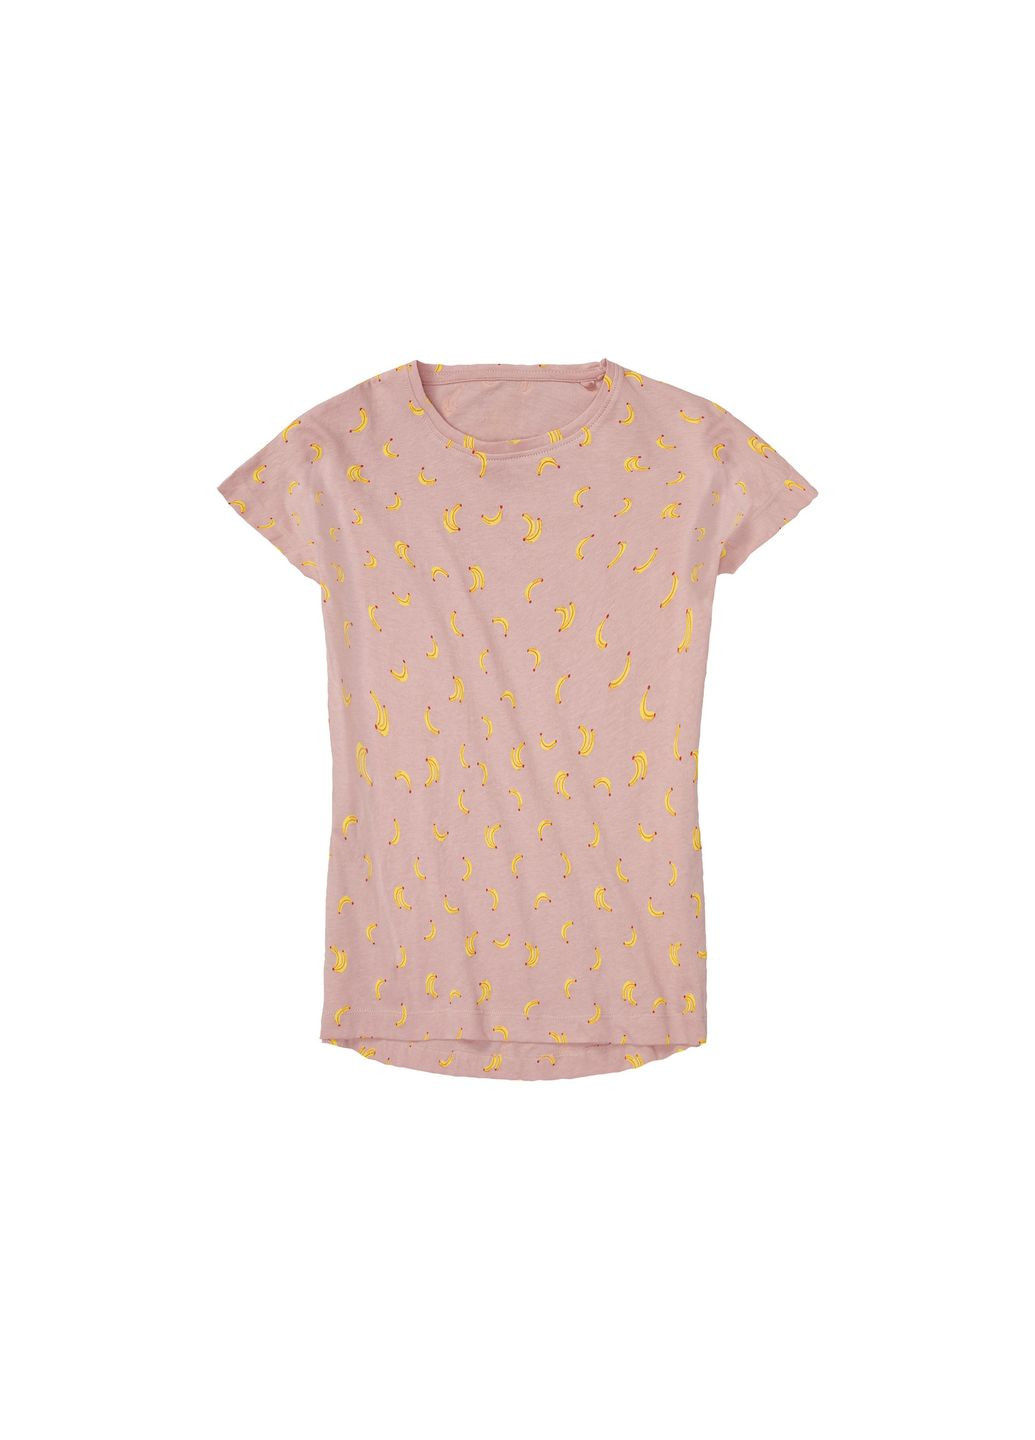 Розовая пижама (футболка и шорты) для девочки 409979 Pepperts